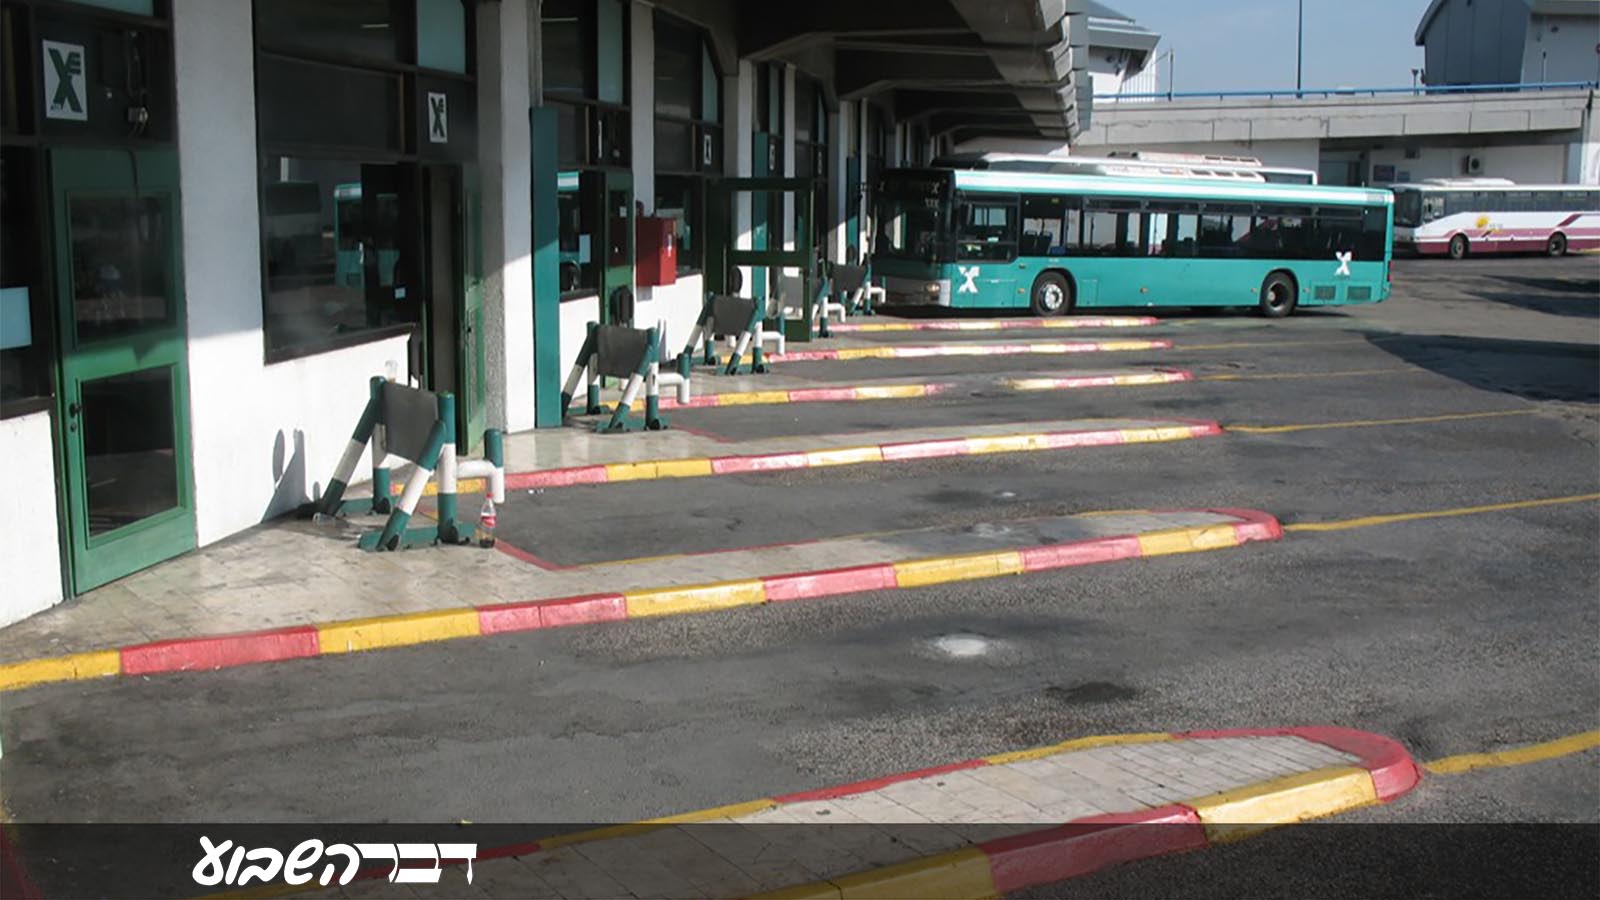 רציפי אוטובוסים בתחנה מרכזית תל אביב (צילום: Ynhockey / ויקימדיה).